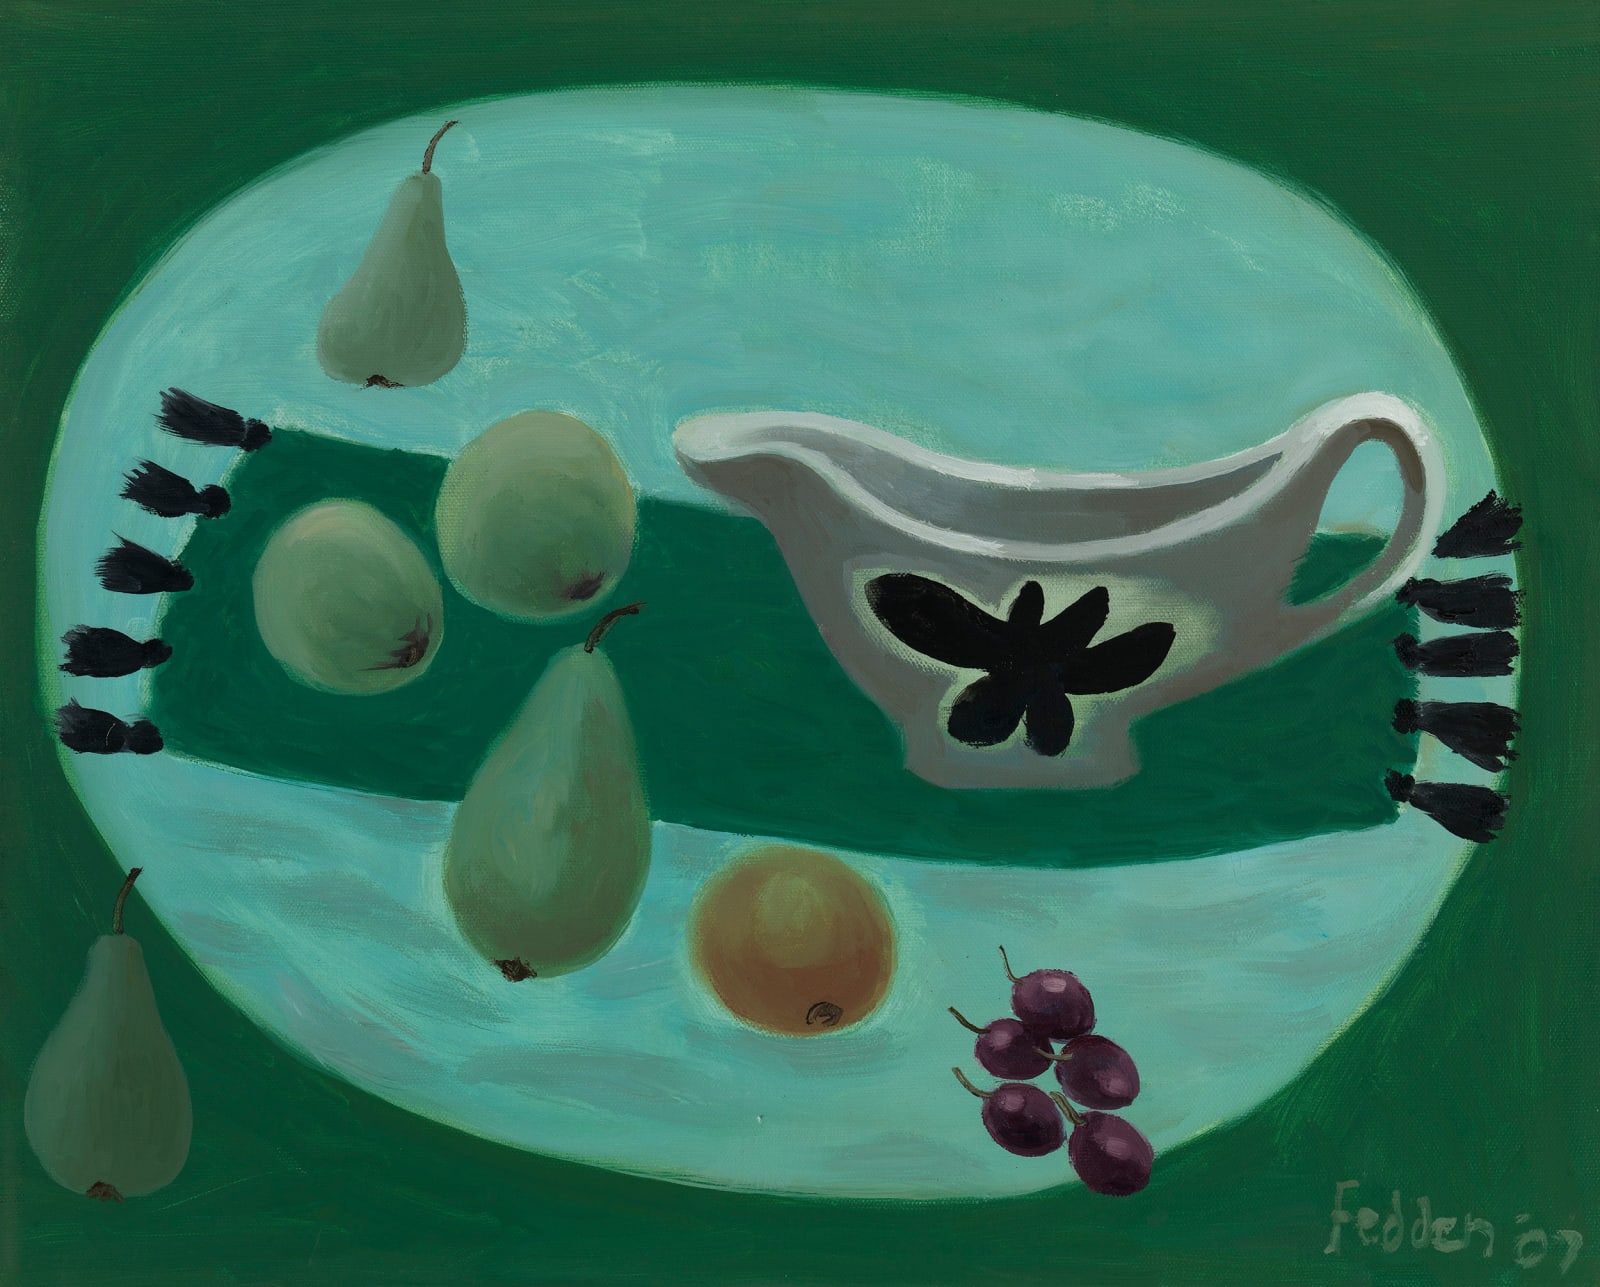 Mary Fedden, Still life with milk jug, 2007